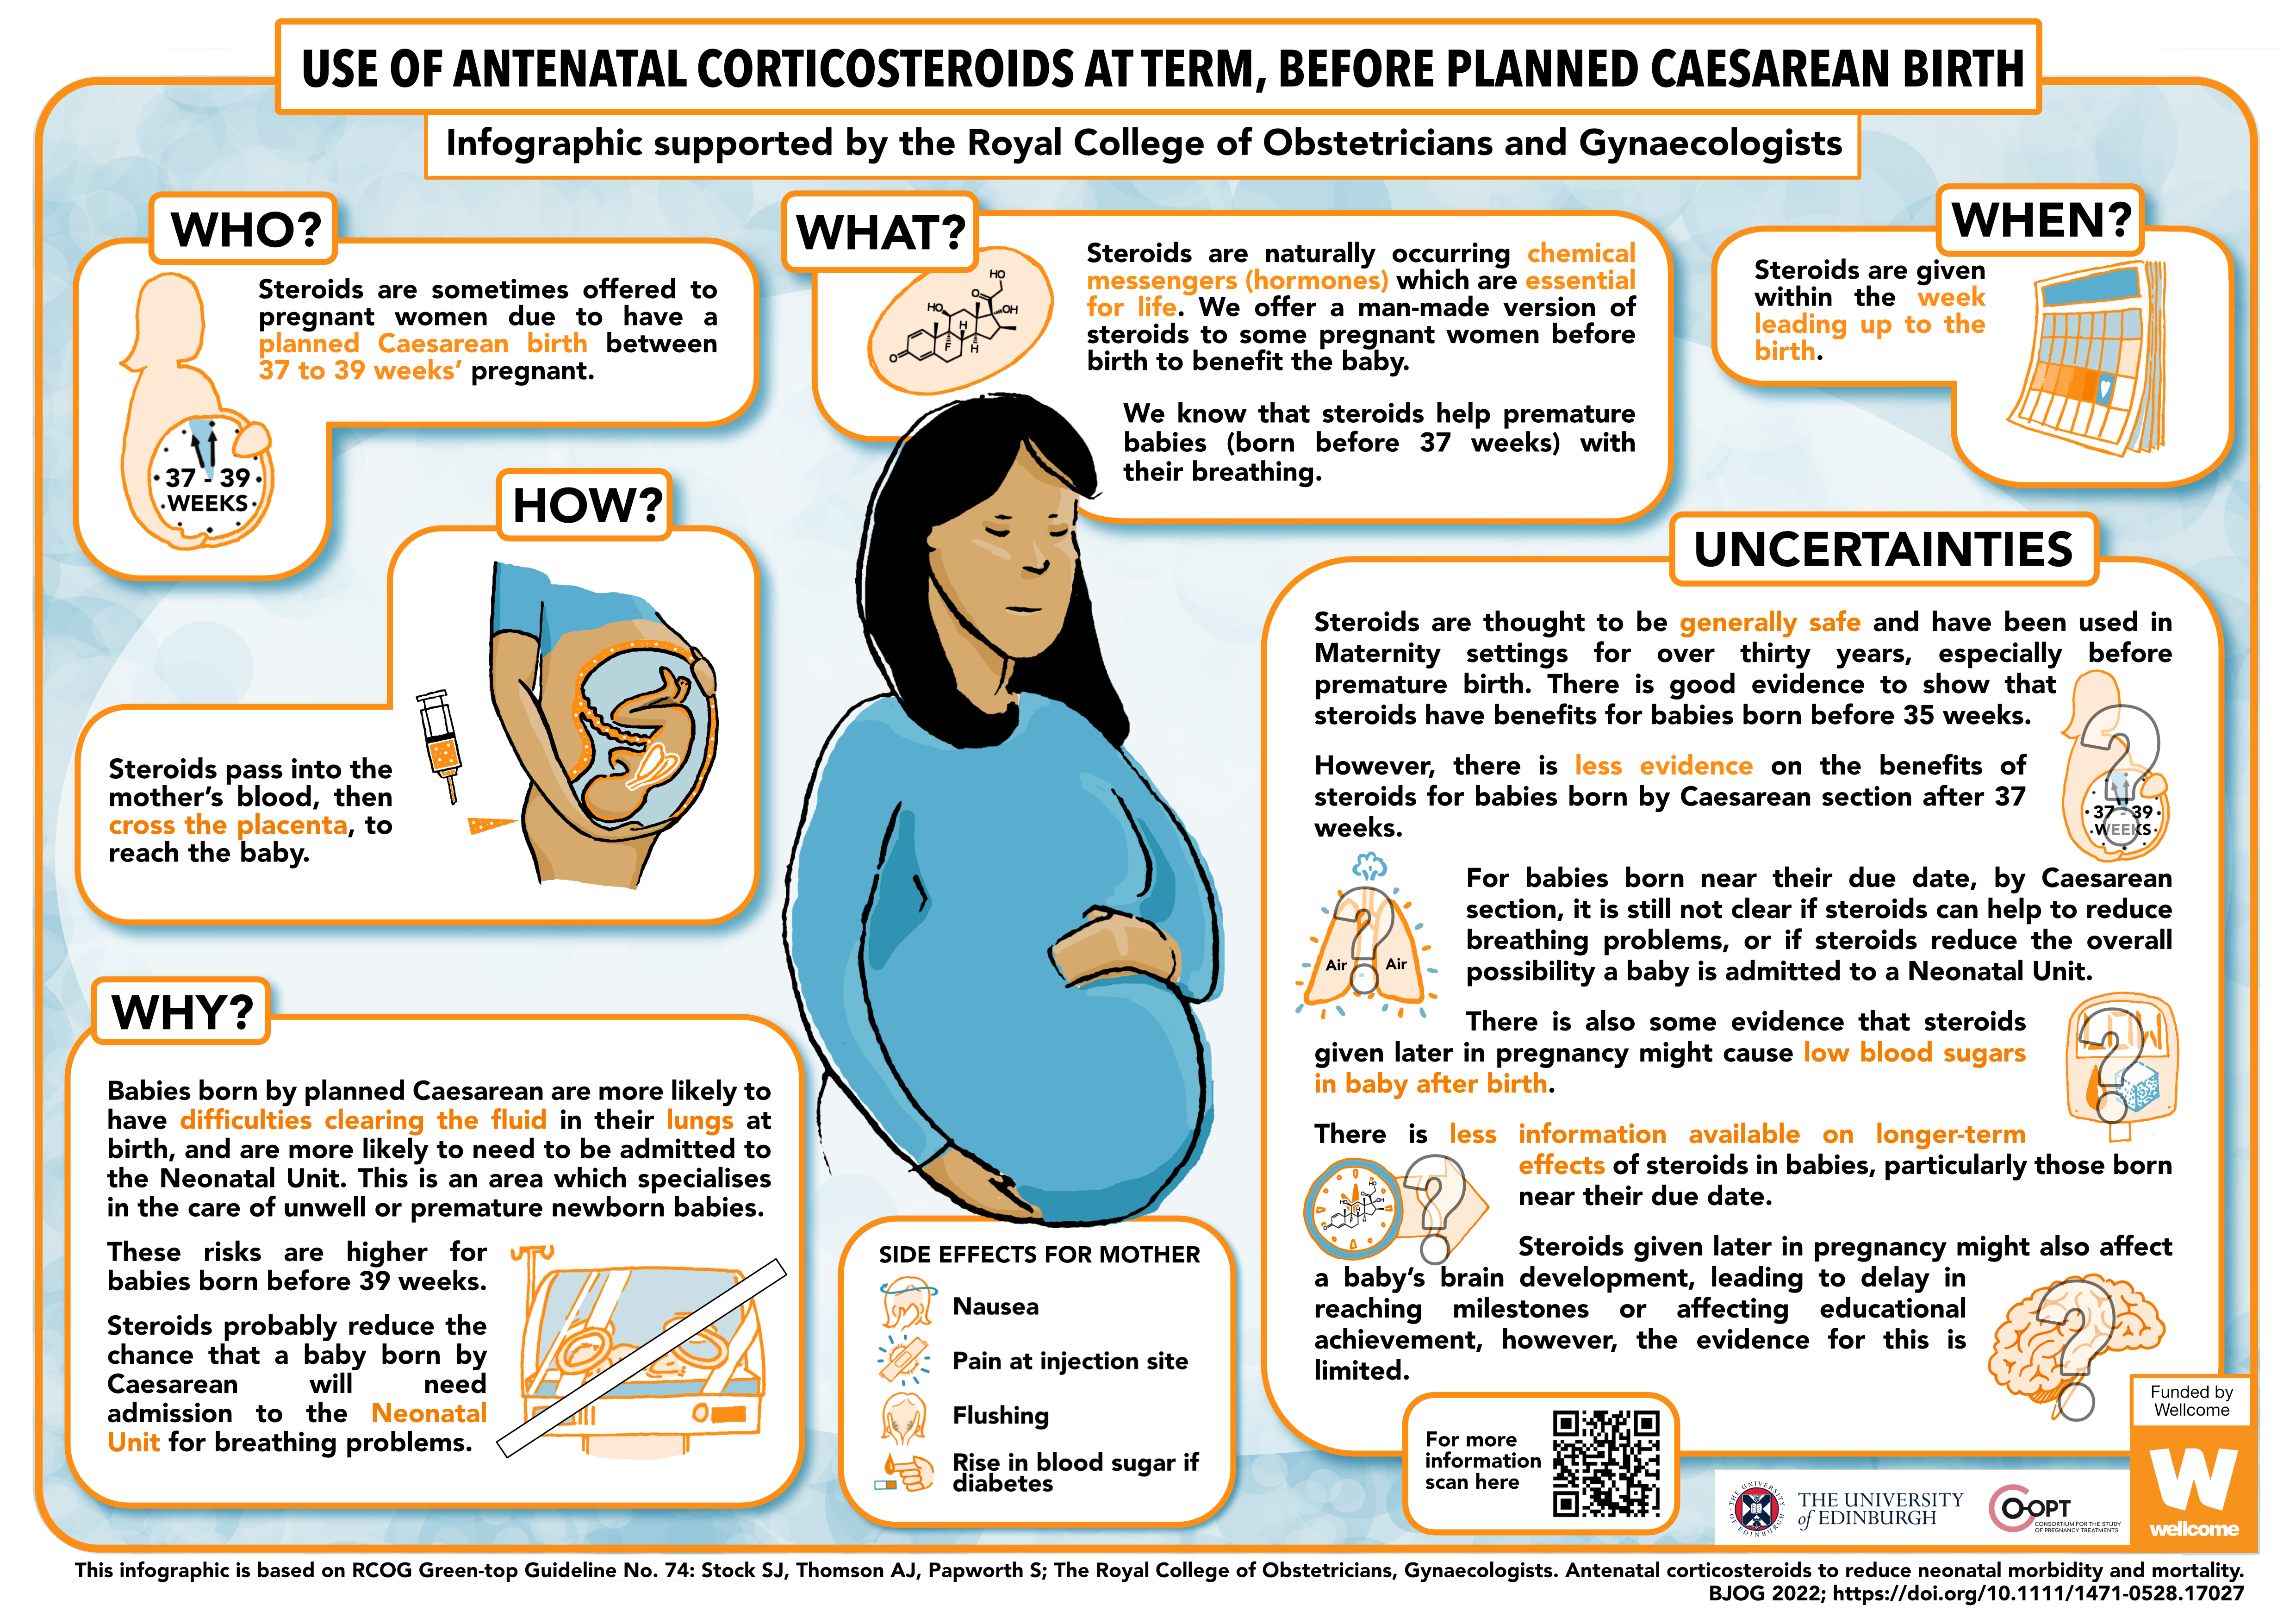  Antenatal Corticosteroids Infographic